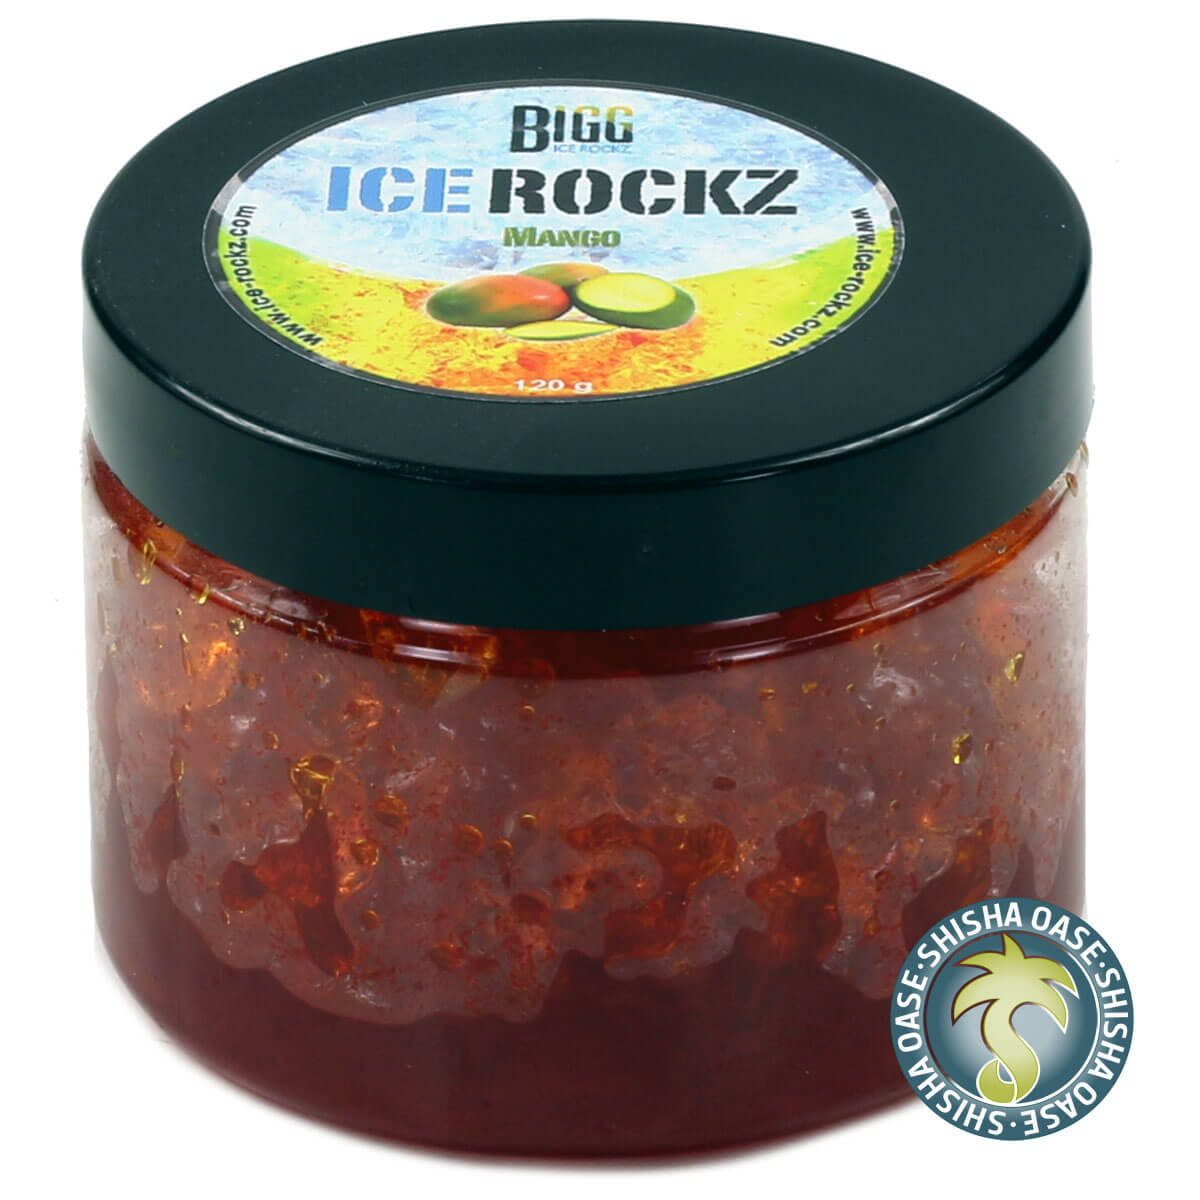 Bigg Ice Rockz - Mango 120g